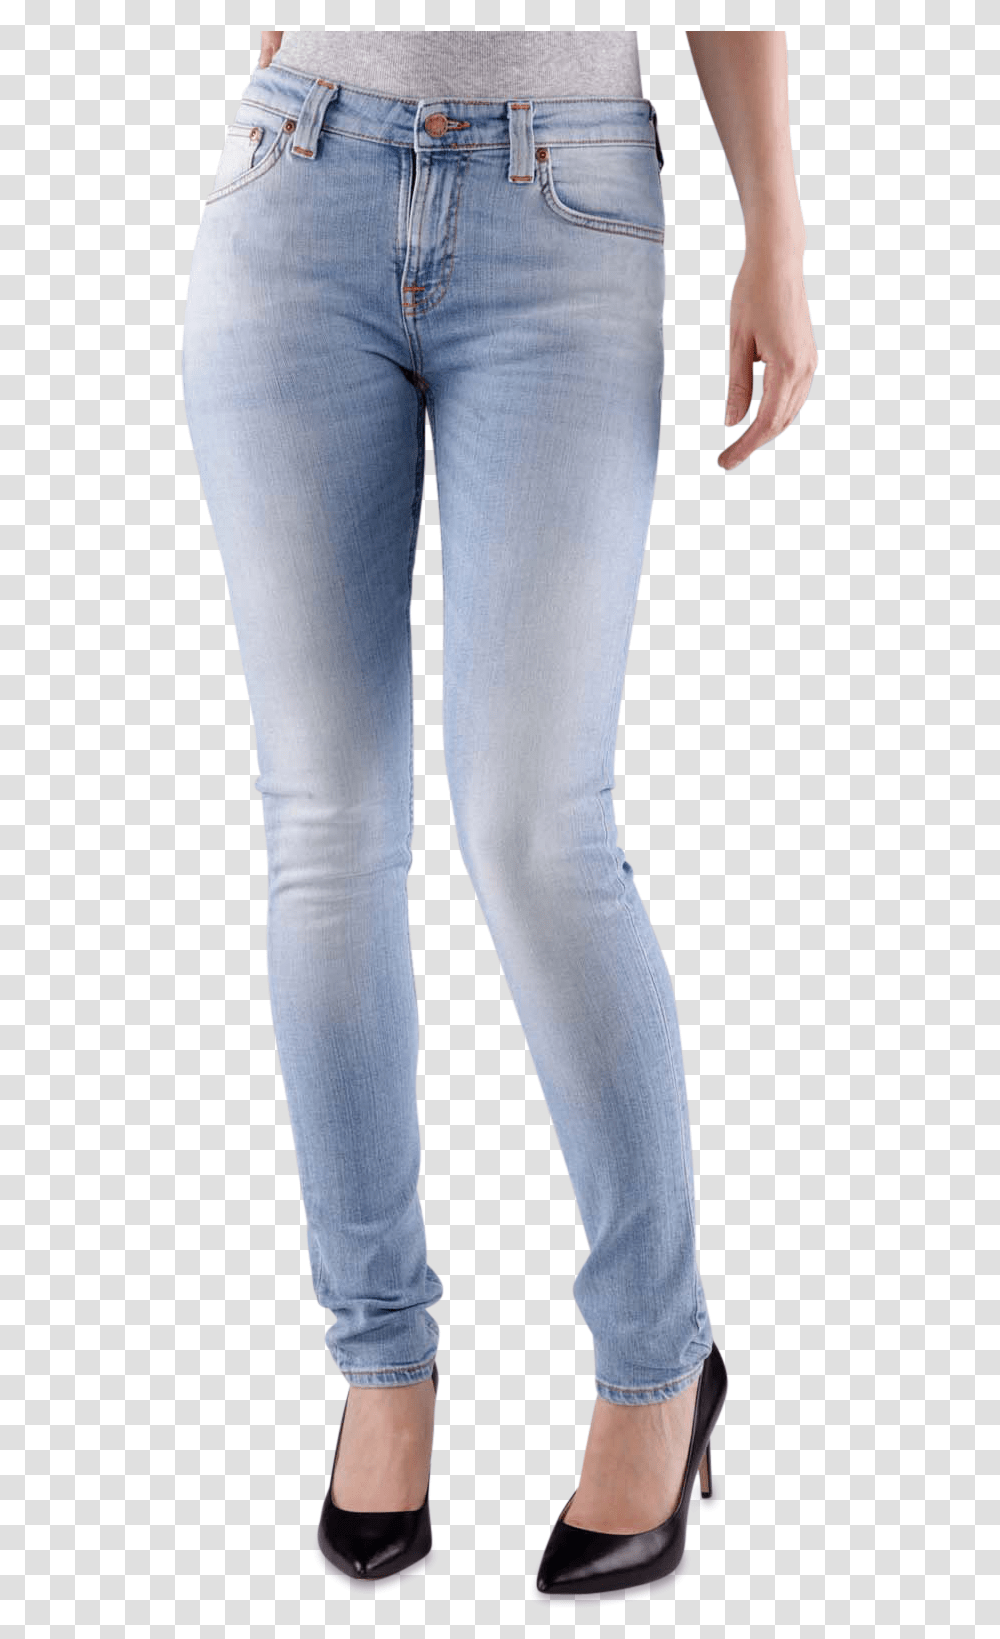 Jeans Clipart Blue Jean Mens Jean Denim Jeans, Pants, Apparel, Footwear Transparent Png